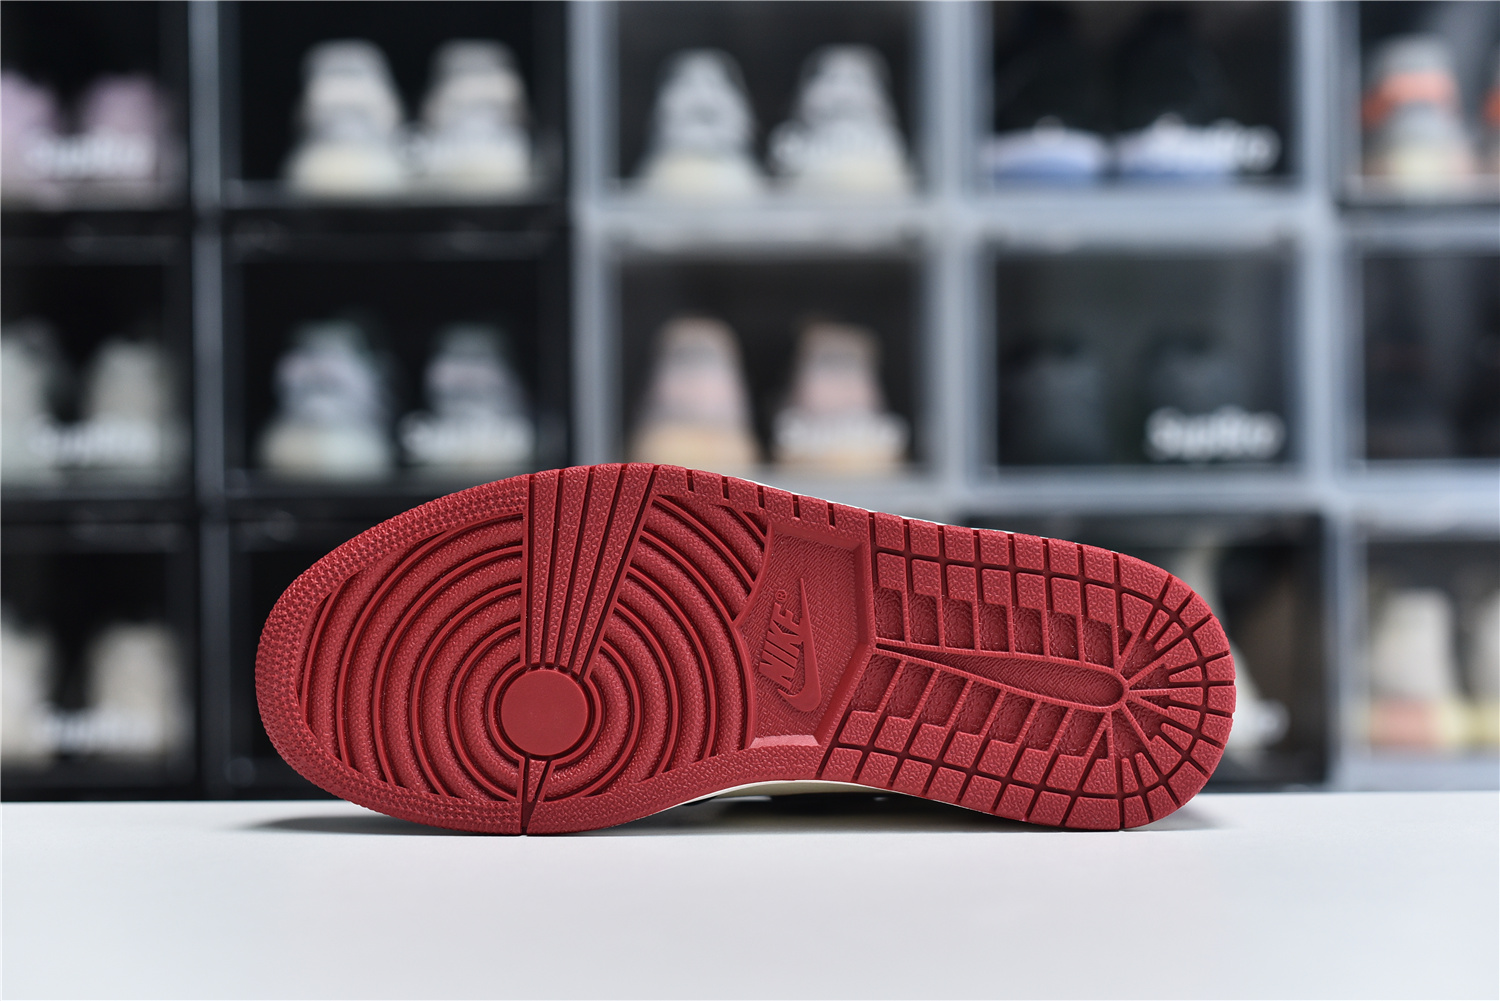 Nike Air Jordan 1 Retro High Og Red Black White Men Sneakers 555088 610 Kickbulk 3 - www.kickbulk.org